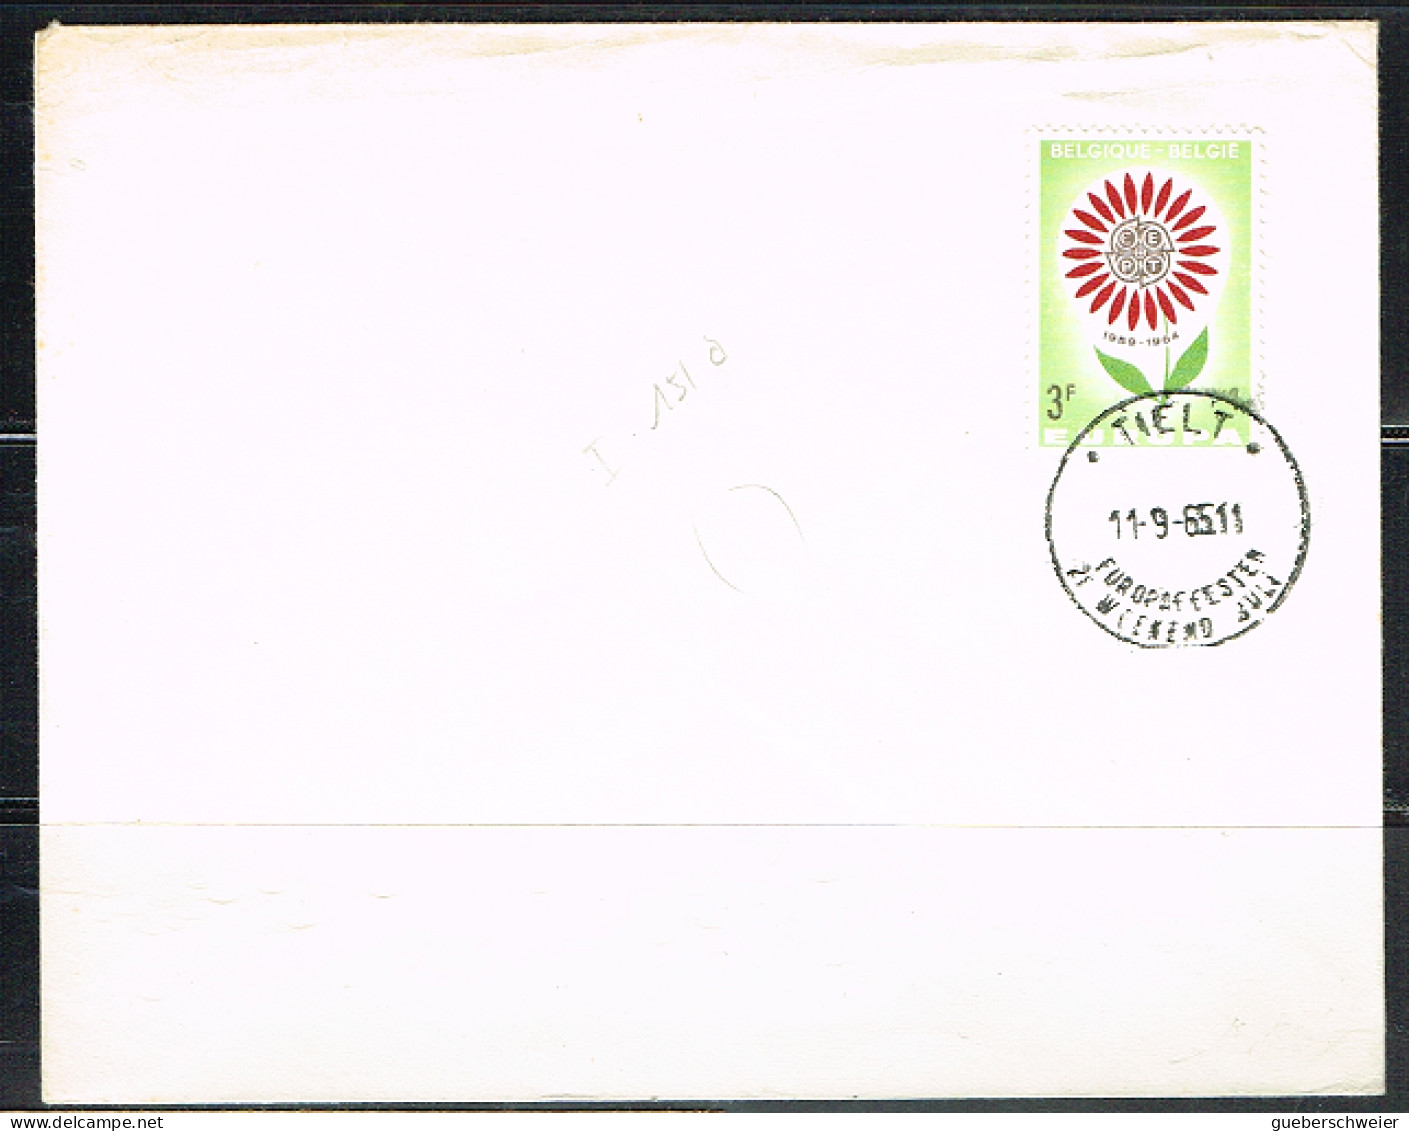 FLOR-L219 - BELGIQUE N° 1298 EUROPA Sur Lettre De Tielt 1965 - Storia Postale